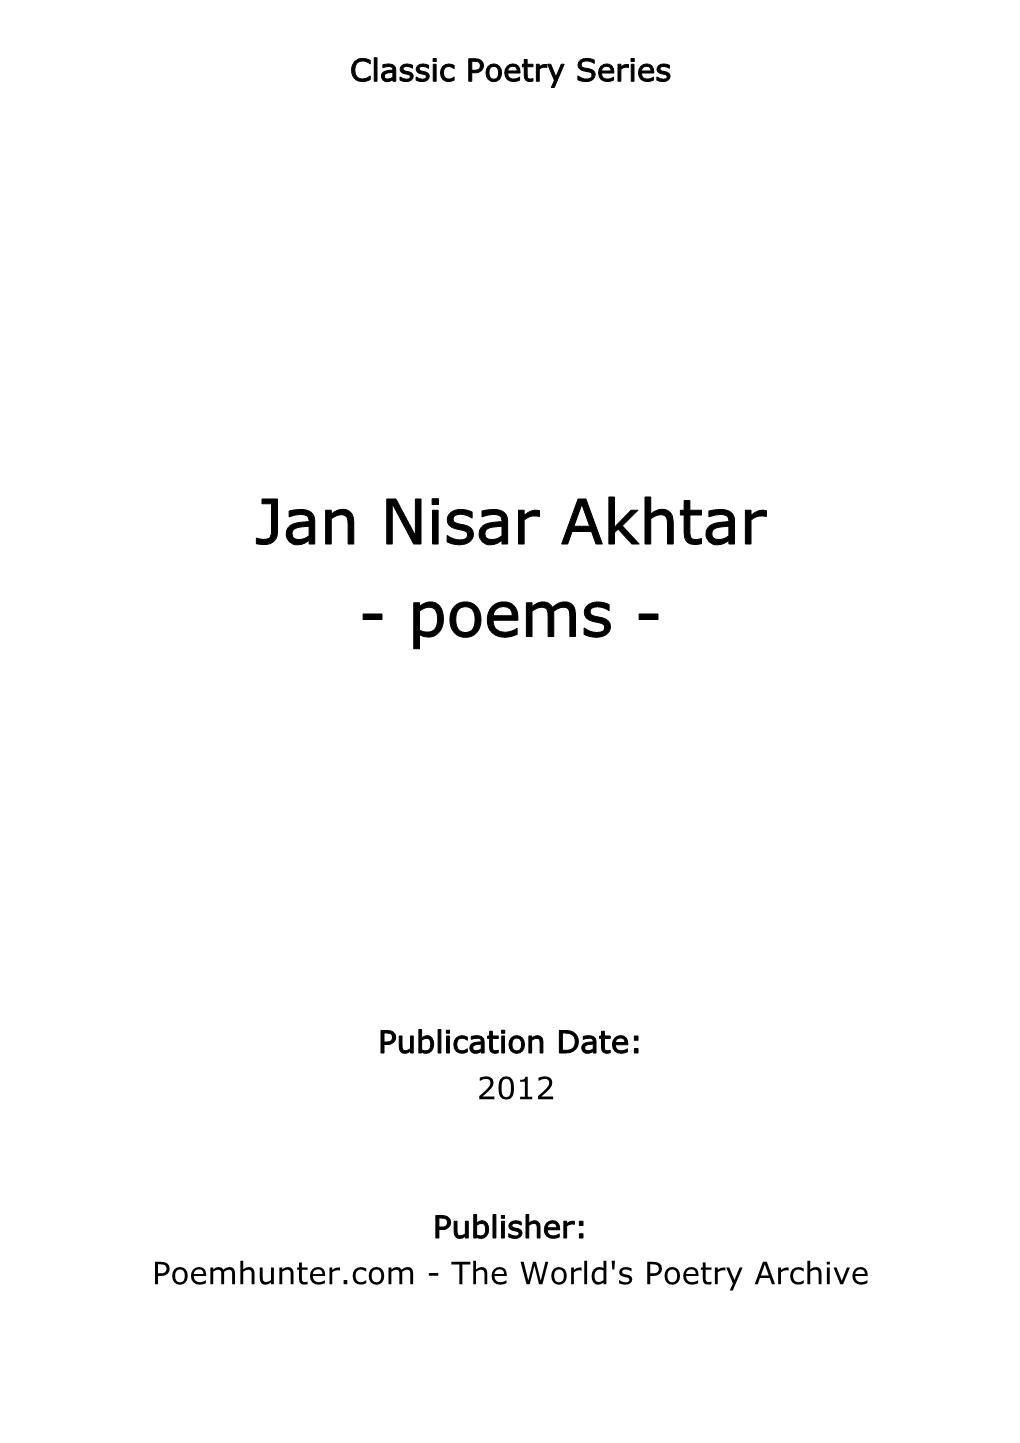 Jan Nisar Akhtar - Poems